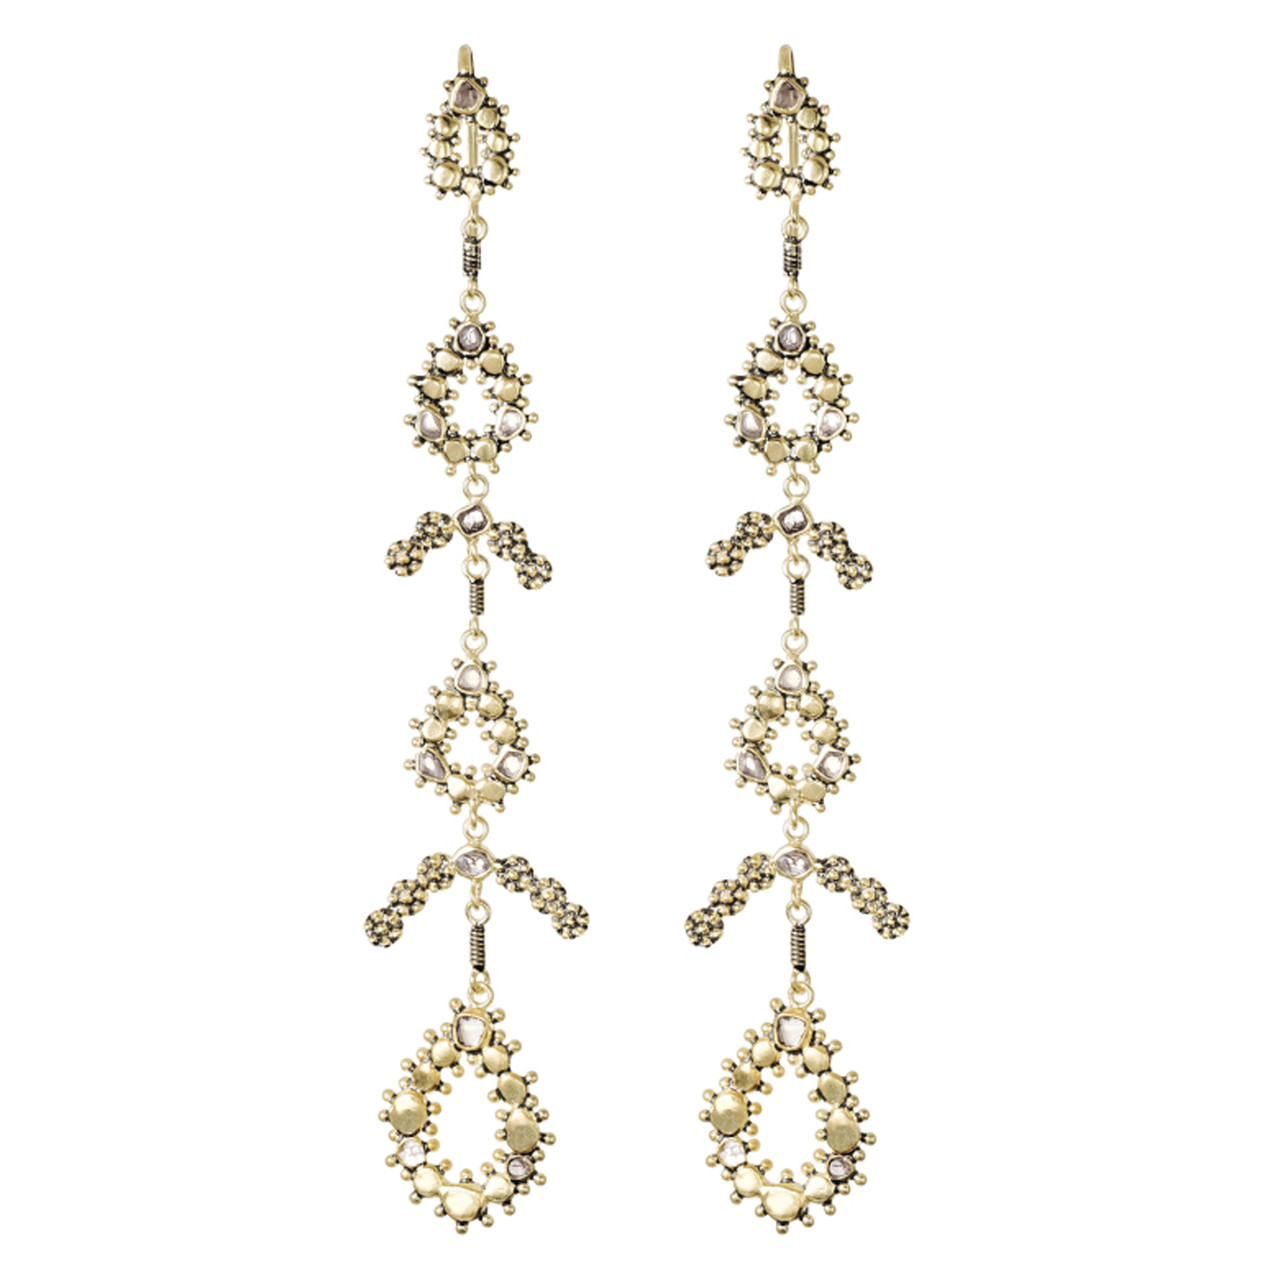 N° 851 Antique Gold & Diamond Slice Drop Earrings, Marie Laure Chamorel, tomfoolery